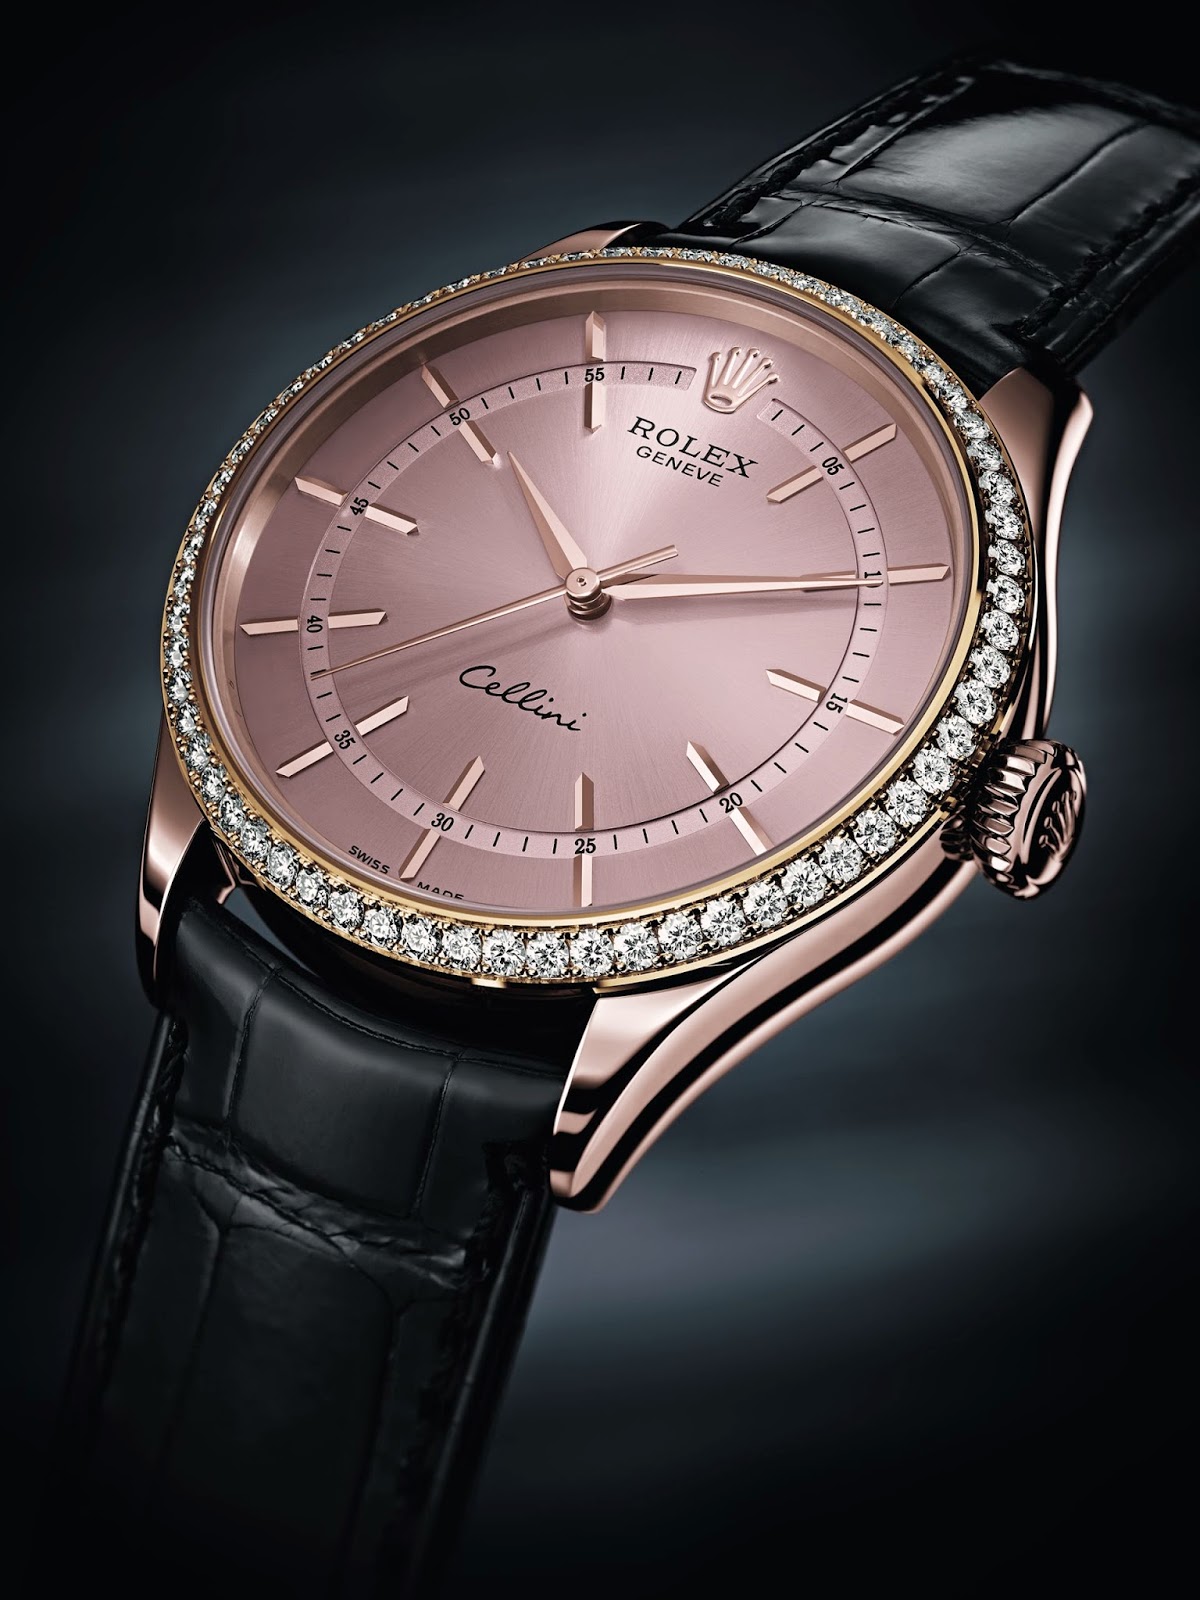 Rolex Cellini Time replica watch